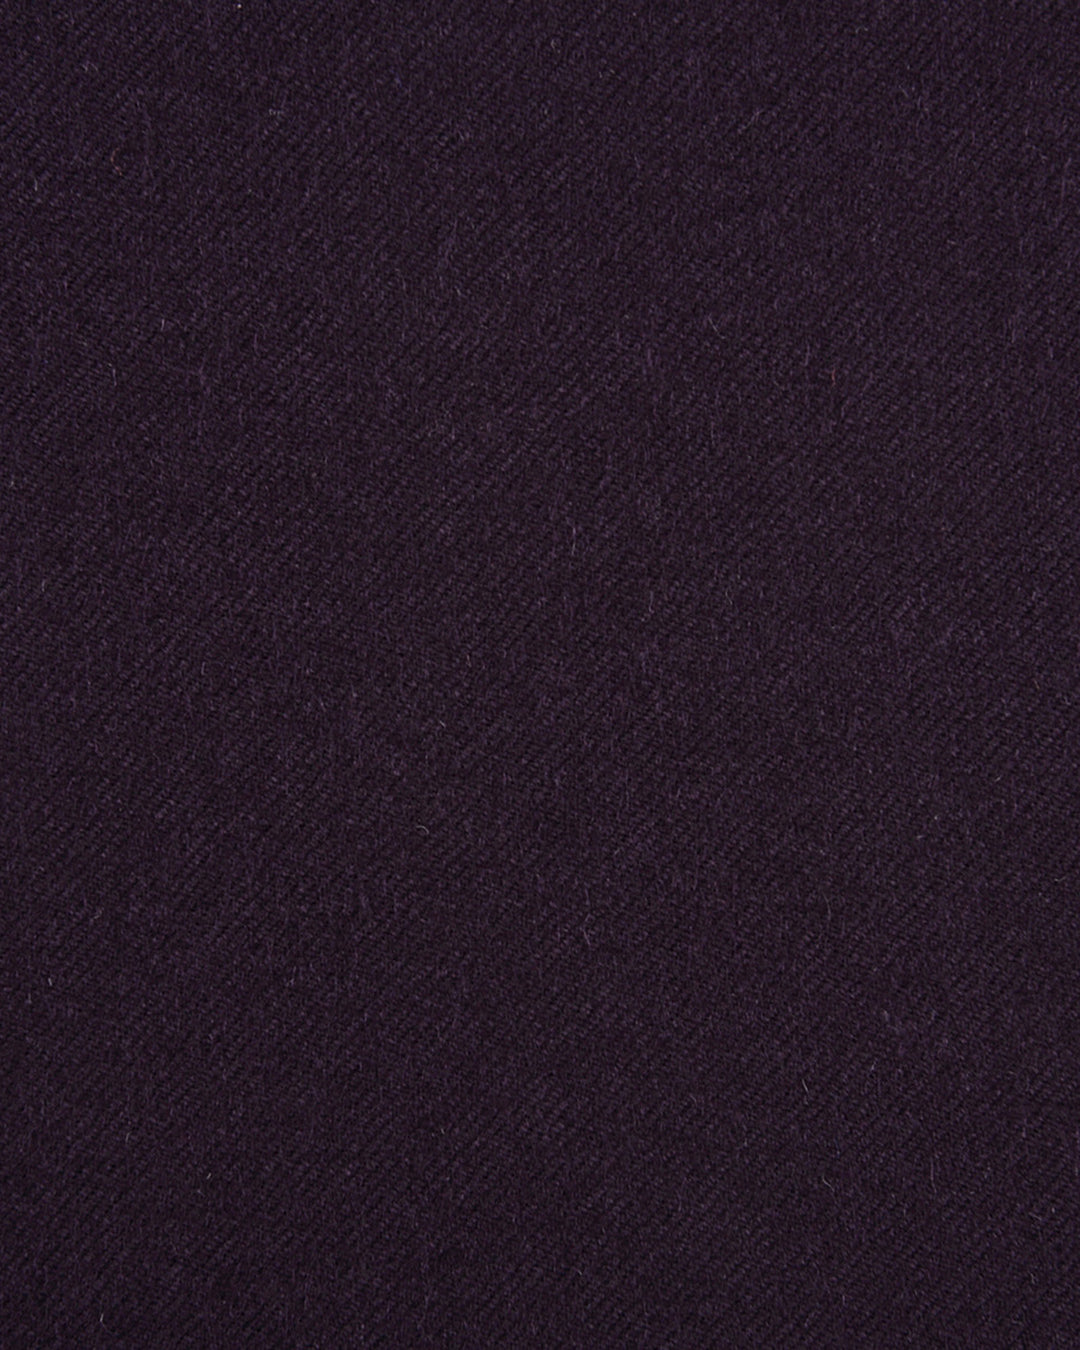 EThomas Wool Cashmere: Dark Violet Twill Jacket